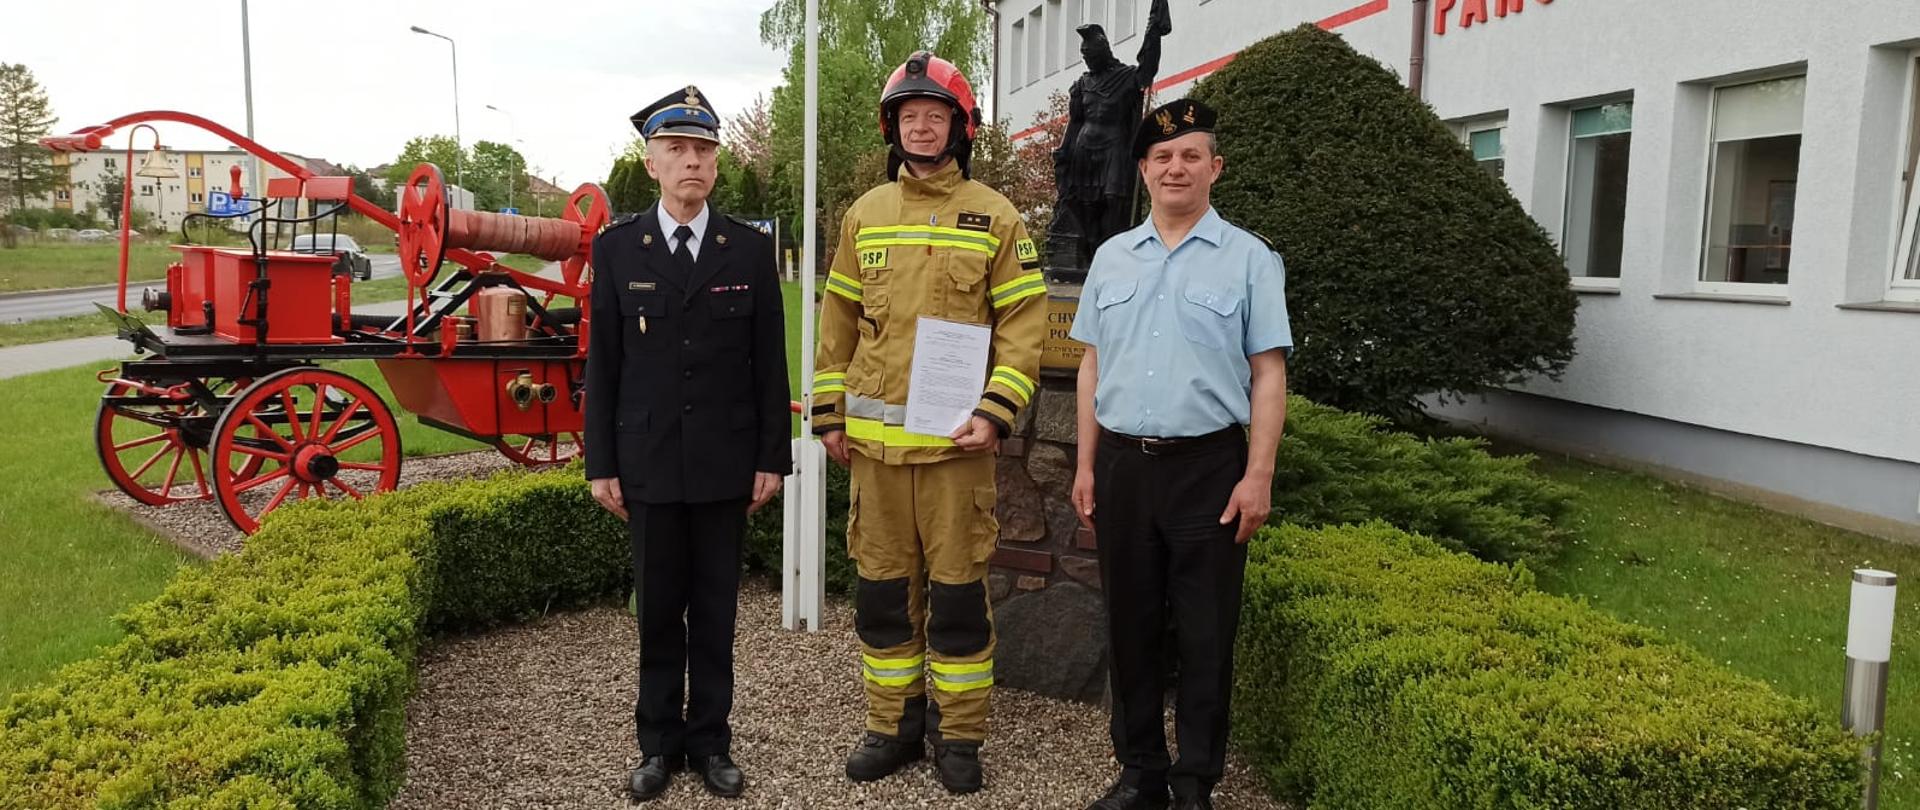 Zdjęcie przedstawia trzech strażaków stojących przy pomniku św. Floriana jeden z nich ubrany jest na bojowo, dwóch w mundurach wyjściowych.